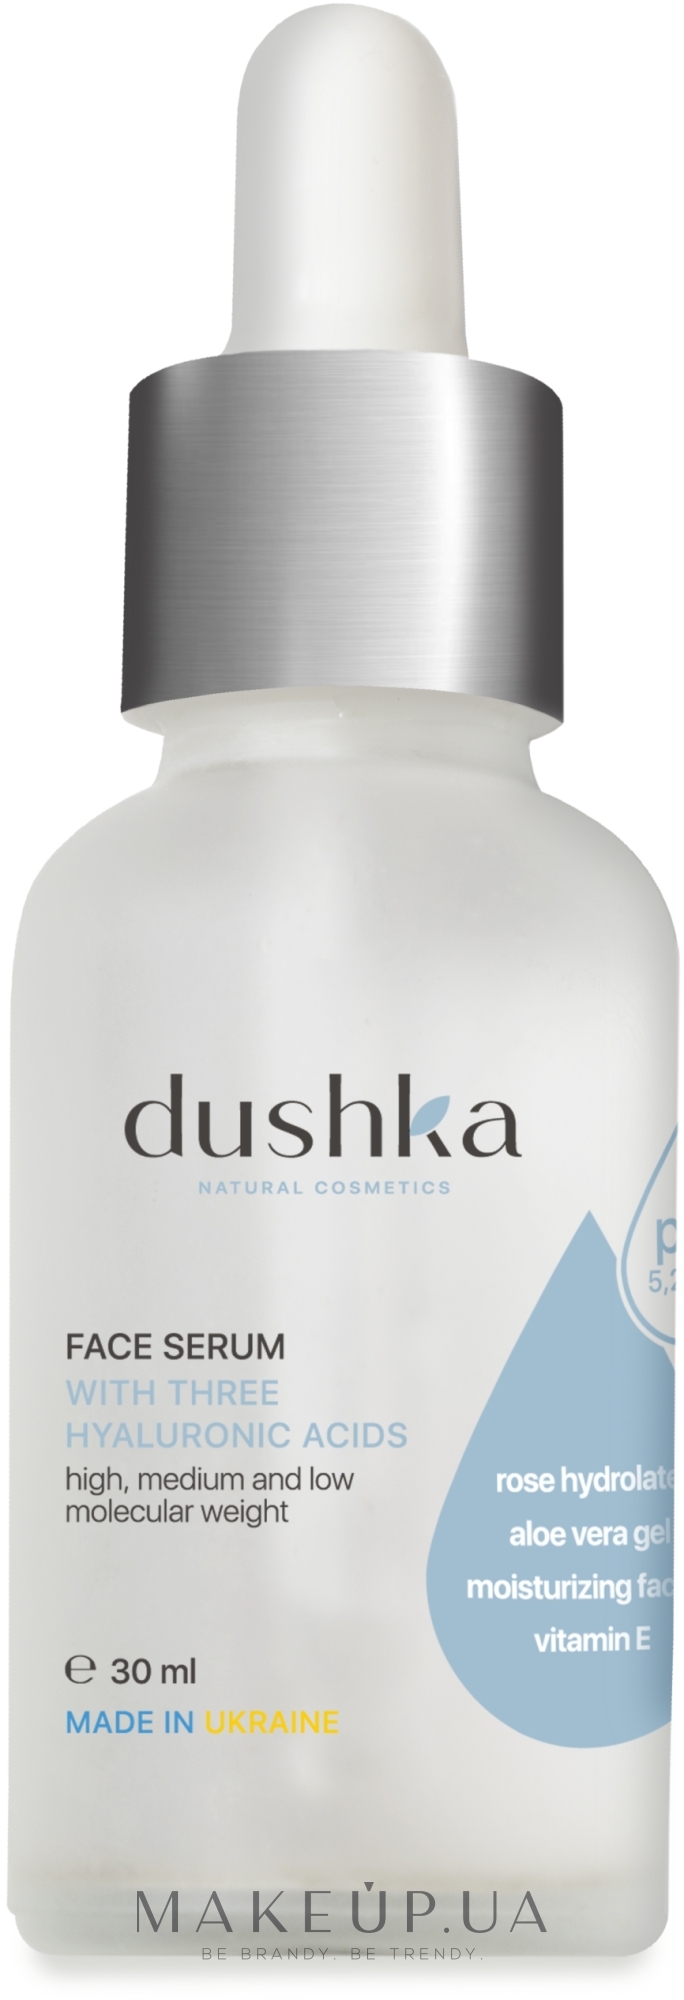 Сыворотка для лица с гиалуроновыми кислотами - Dushka Face Serum — фото 30ml